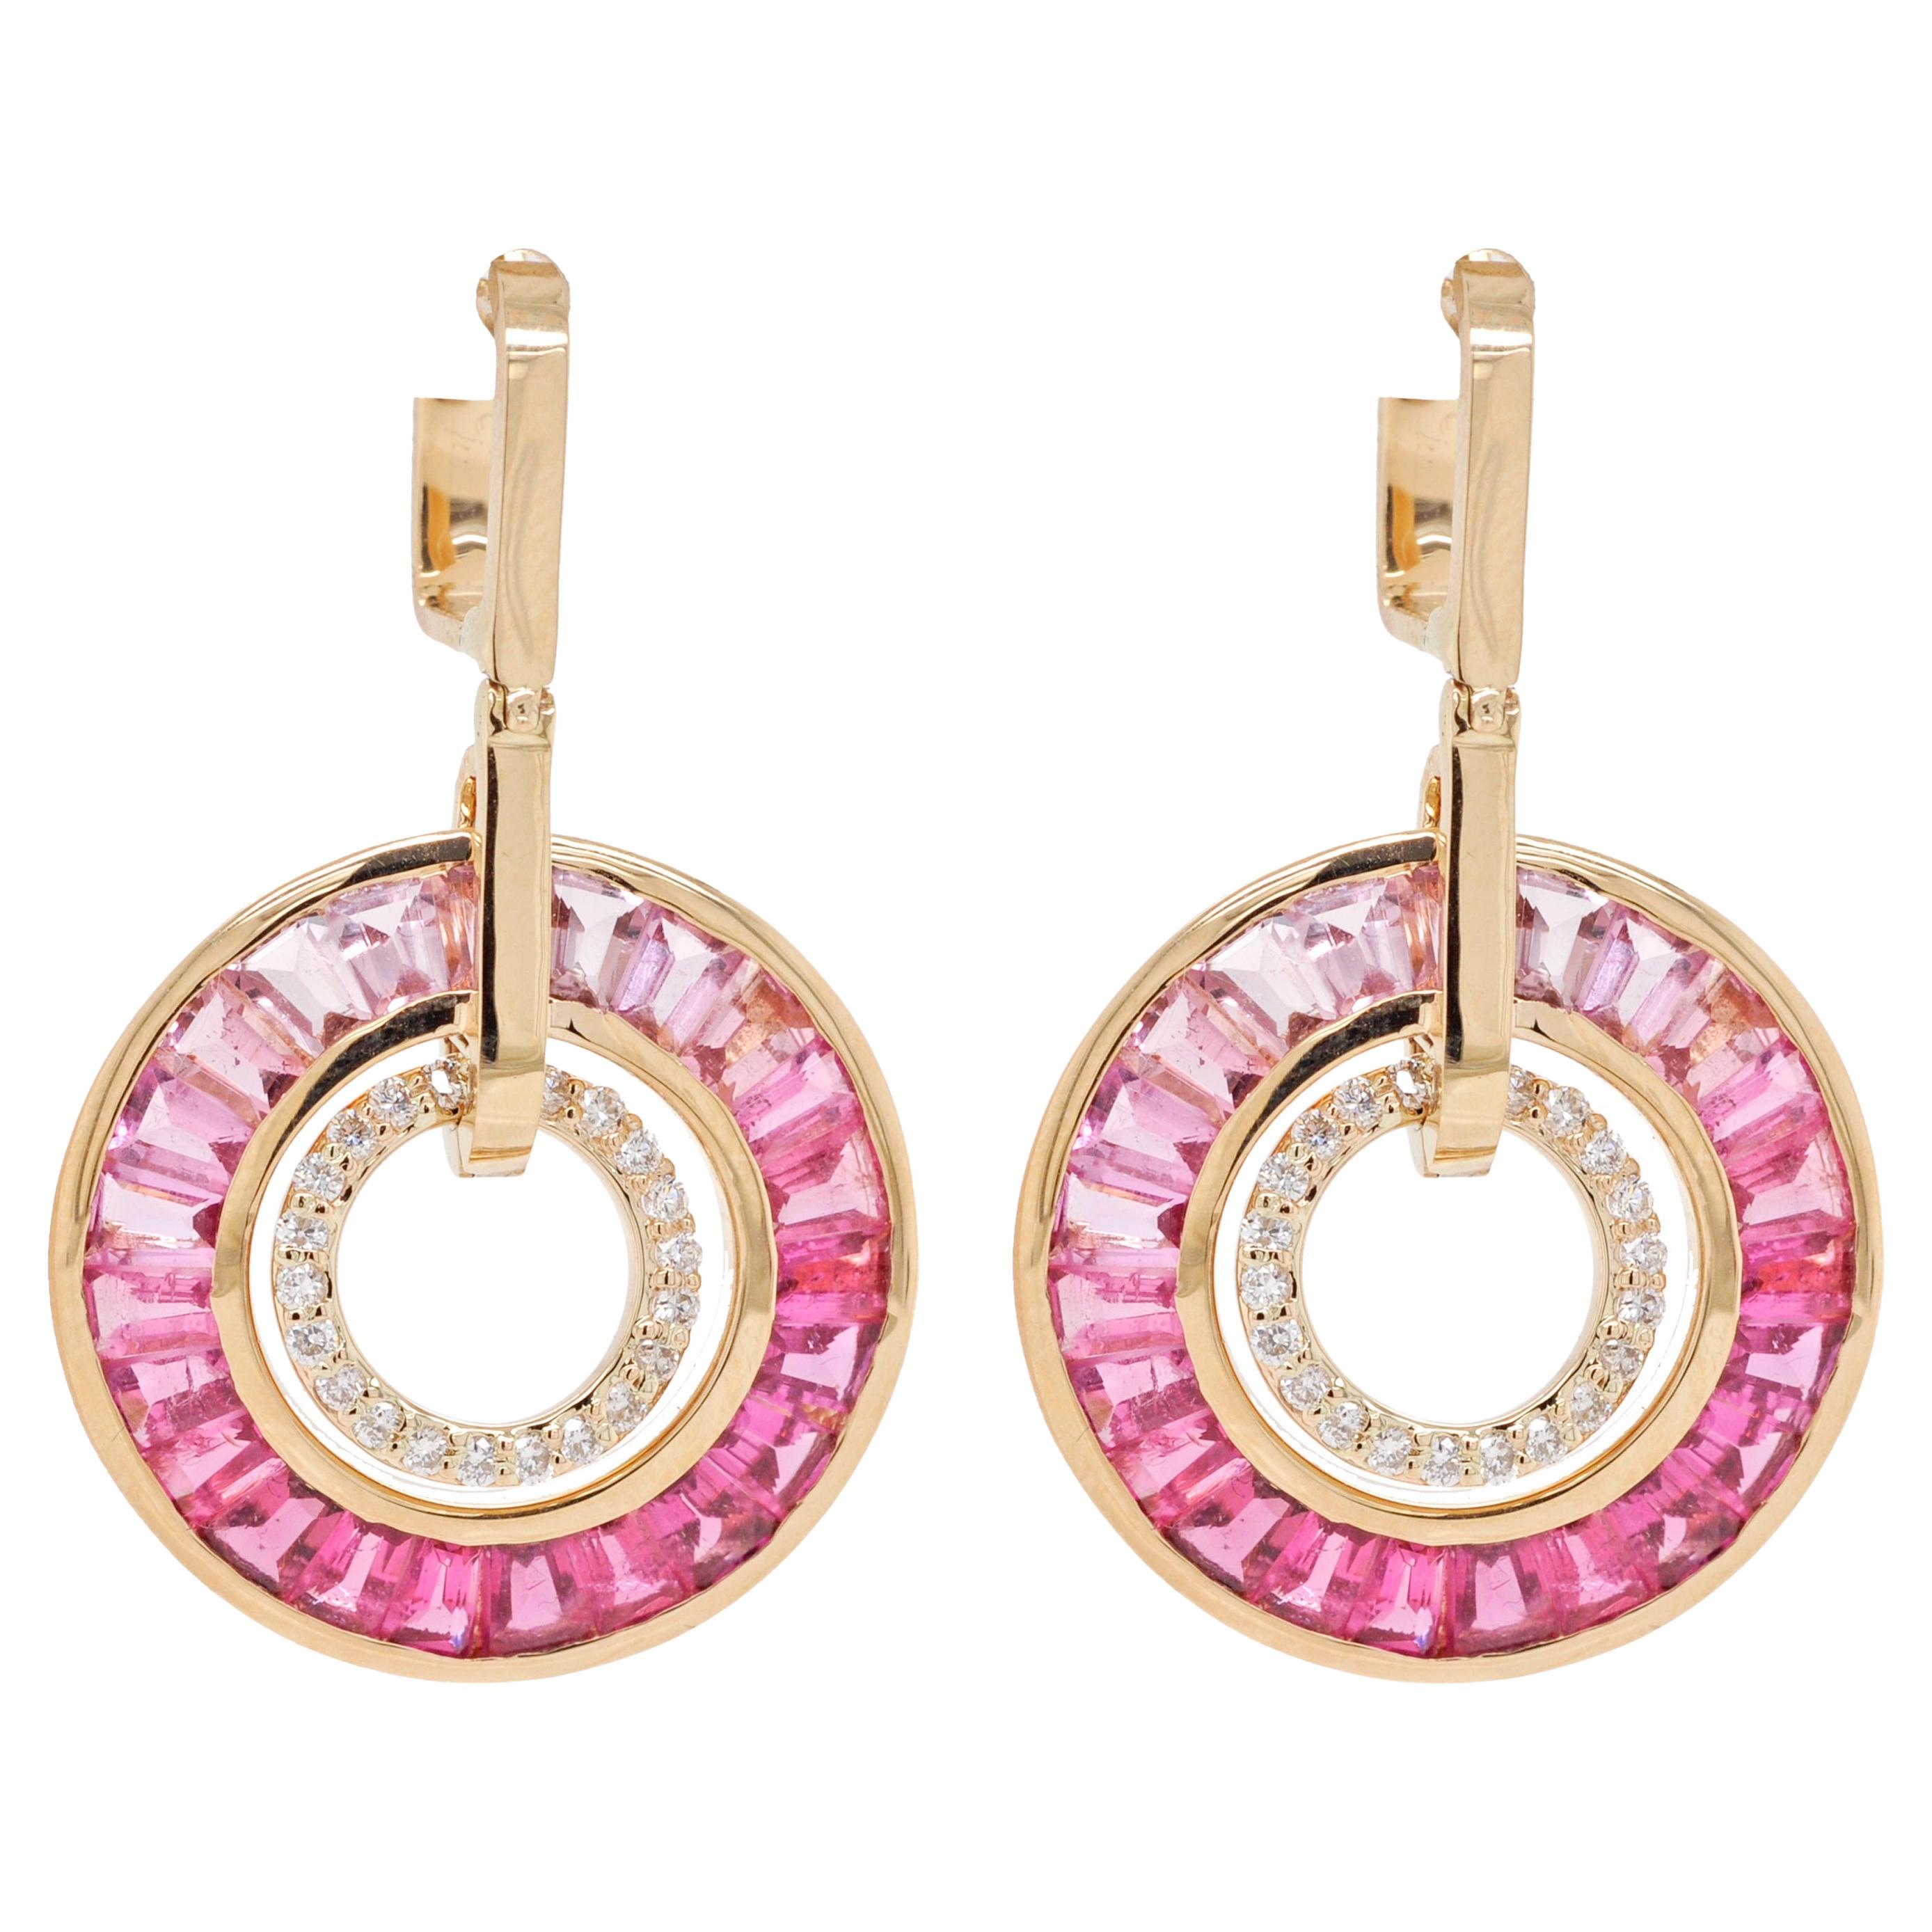 Pendants d'oreilles Art déco en or 18 carats avec tourmaline rose, baguettes et diamants